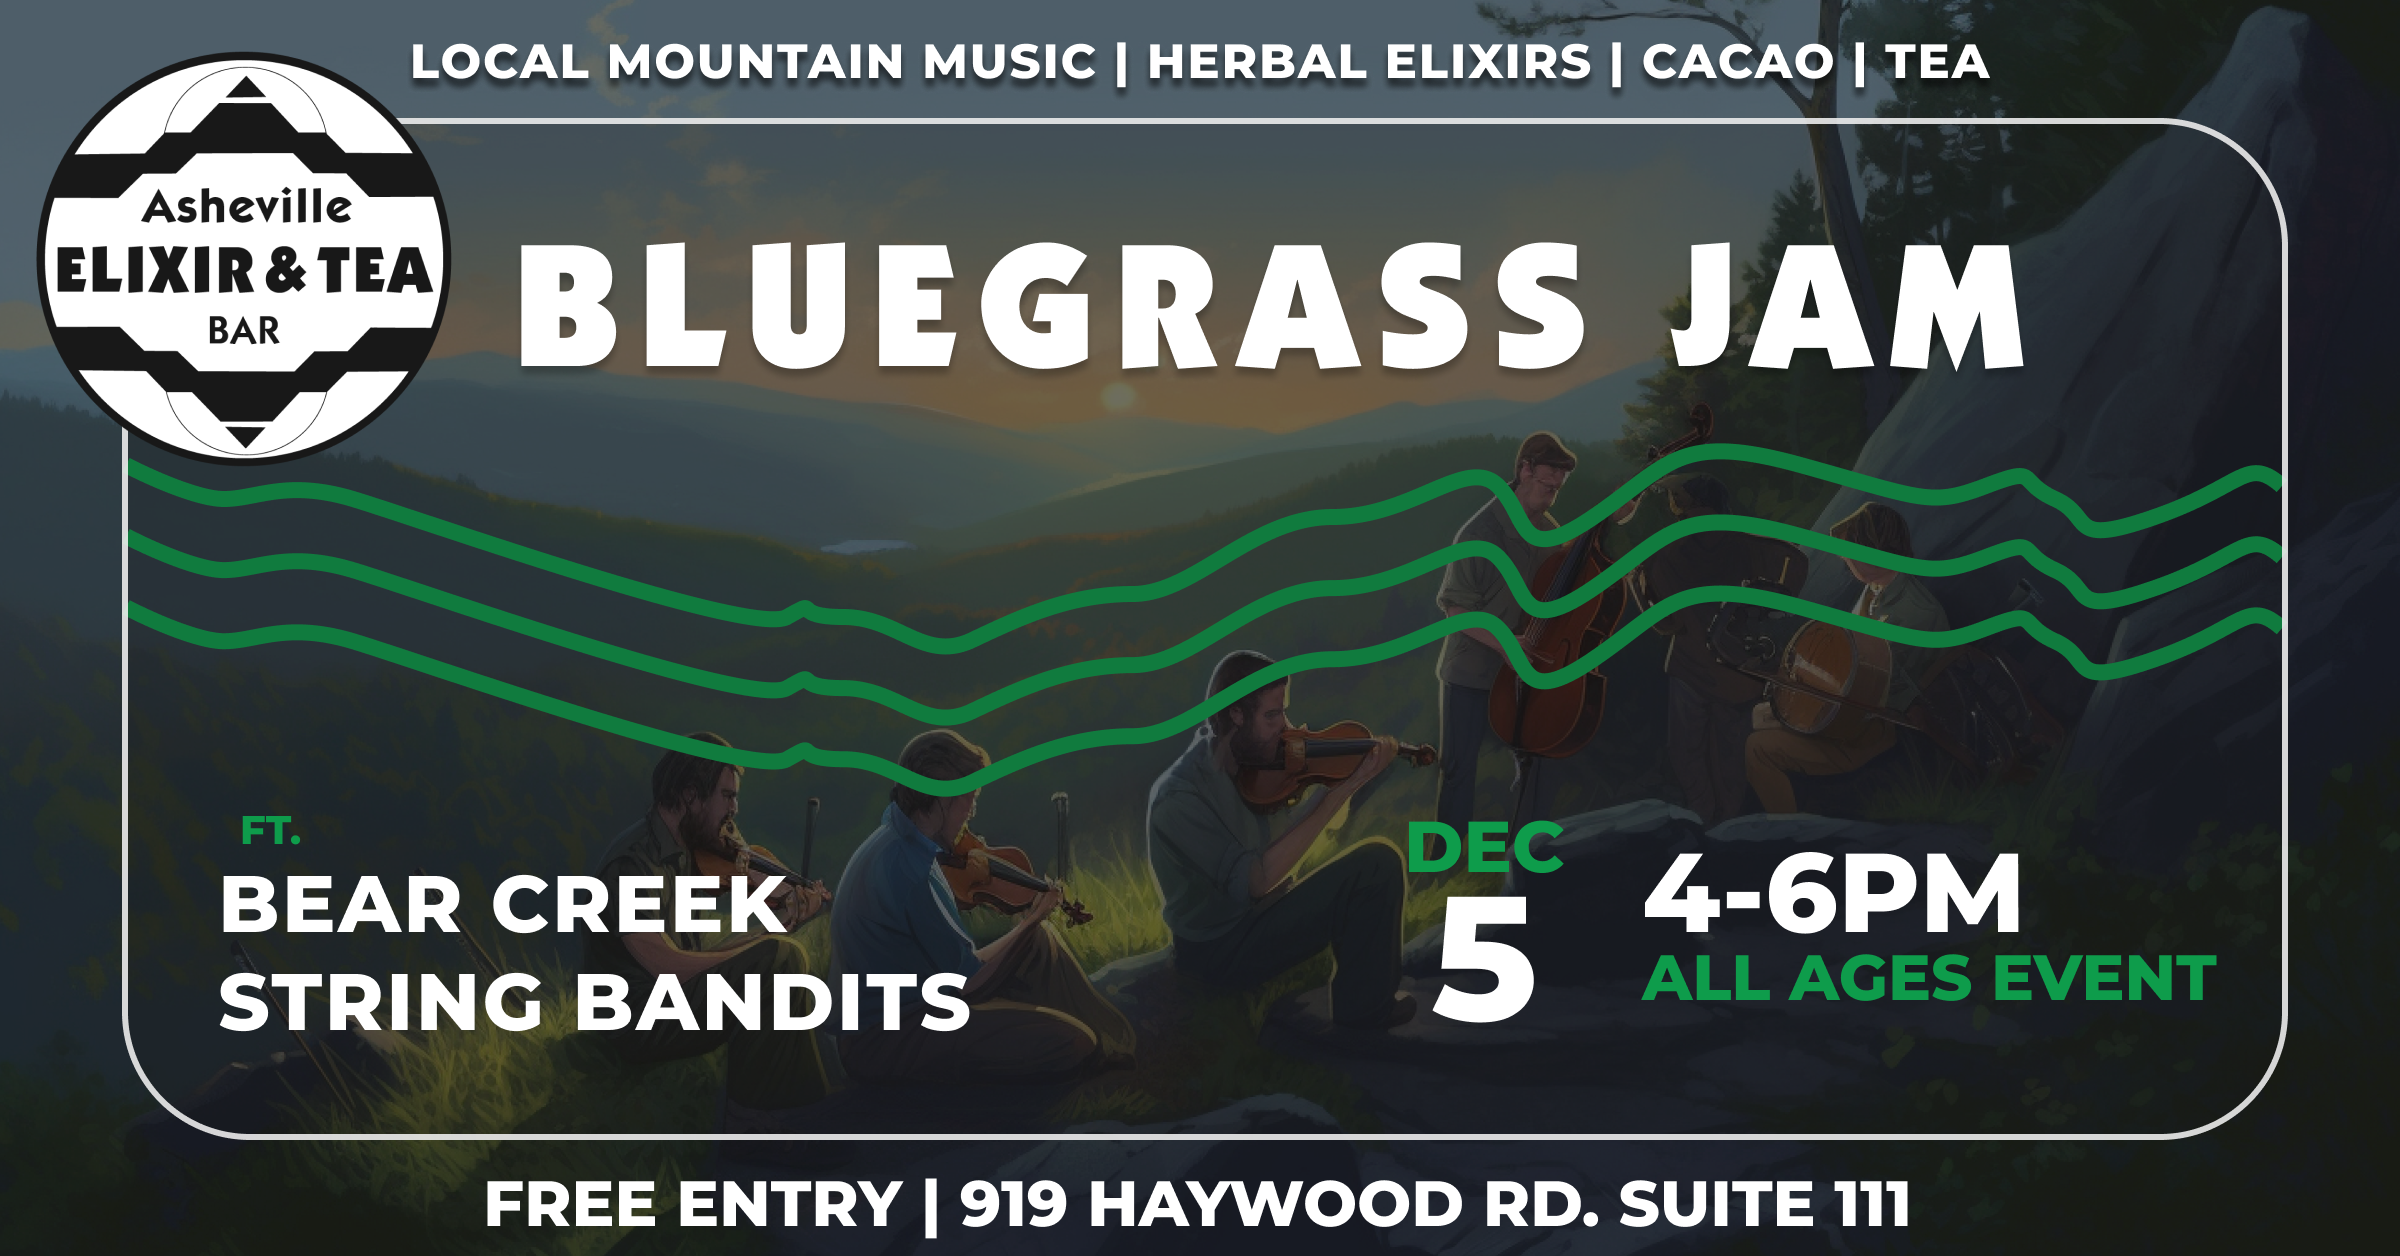 Bluegrass Jam December 5th